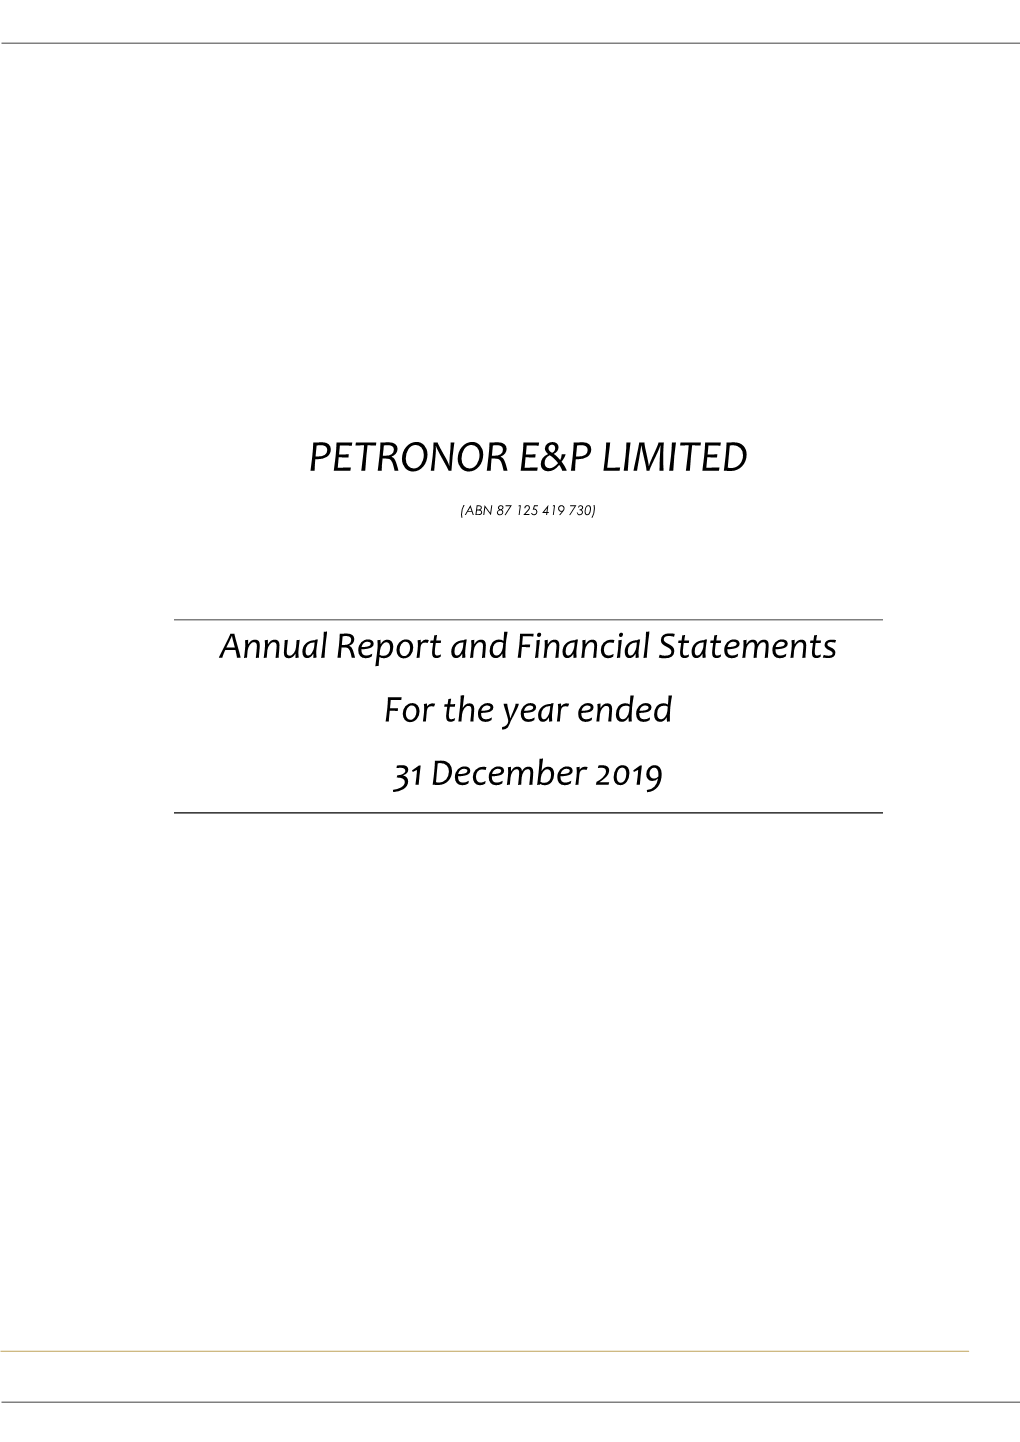 Petronor E&P Limited